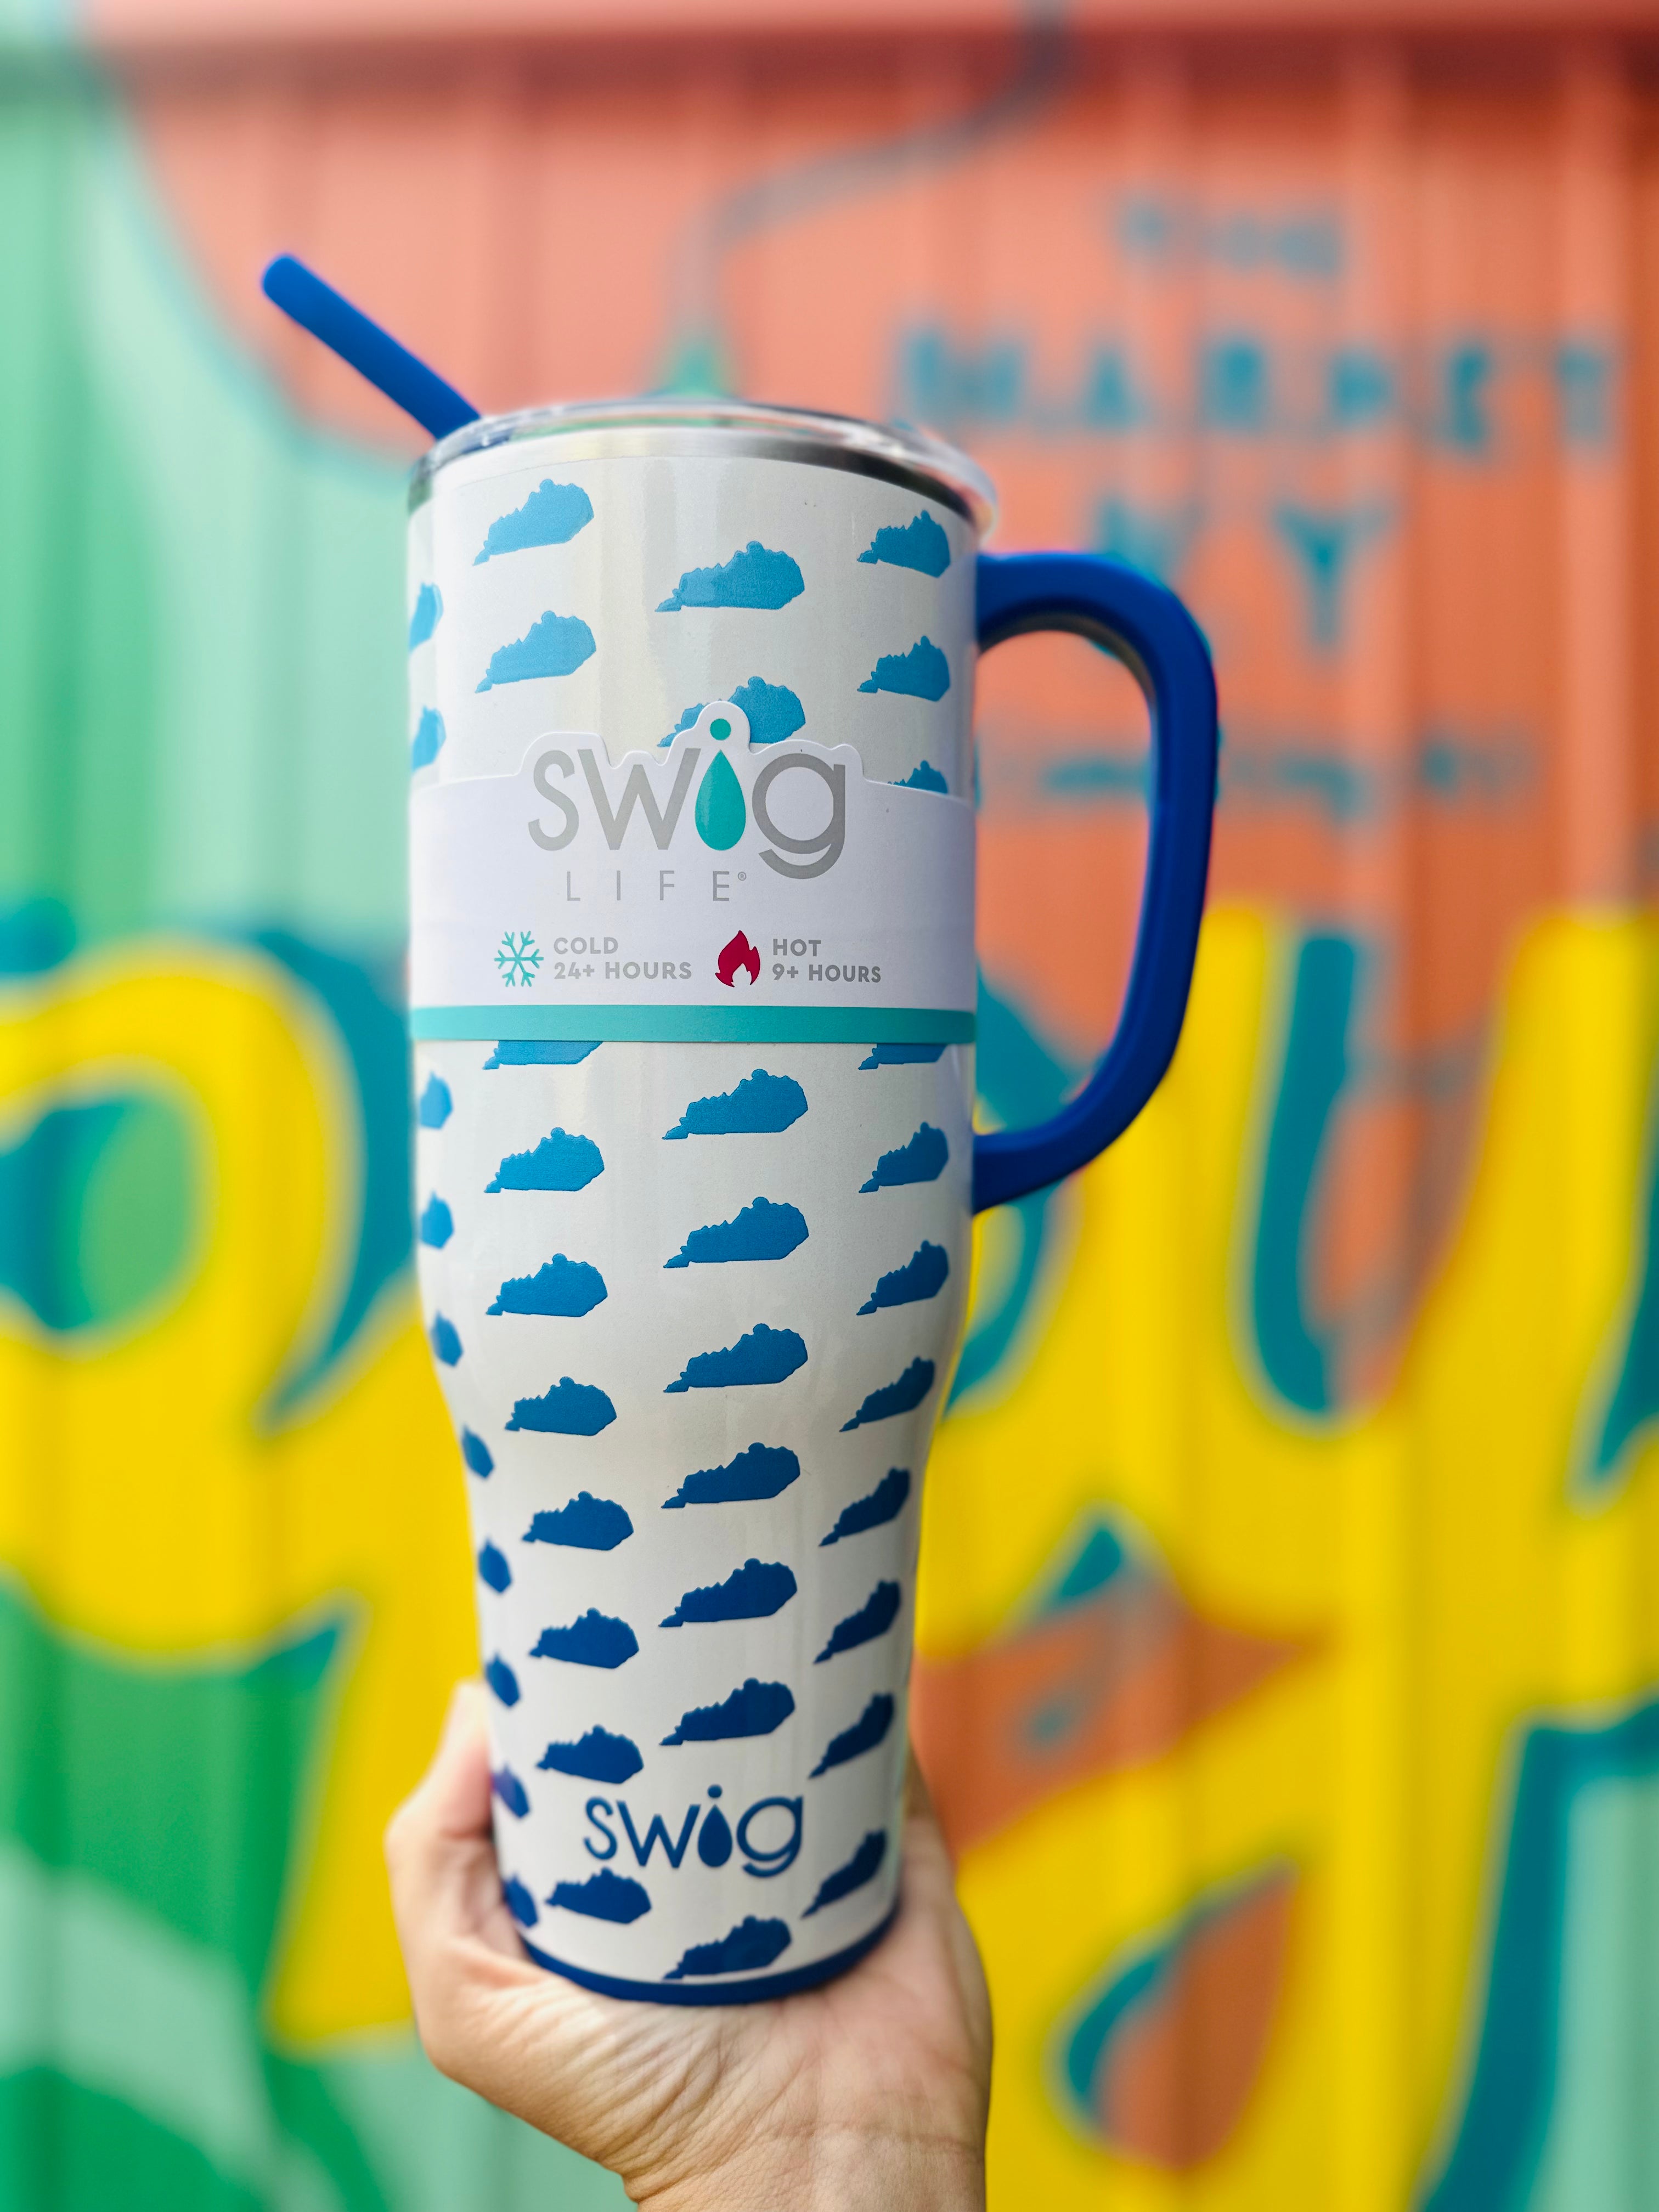 Swig Mega Mug Straw Packs & Cleaning Brush – The Market Ky